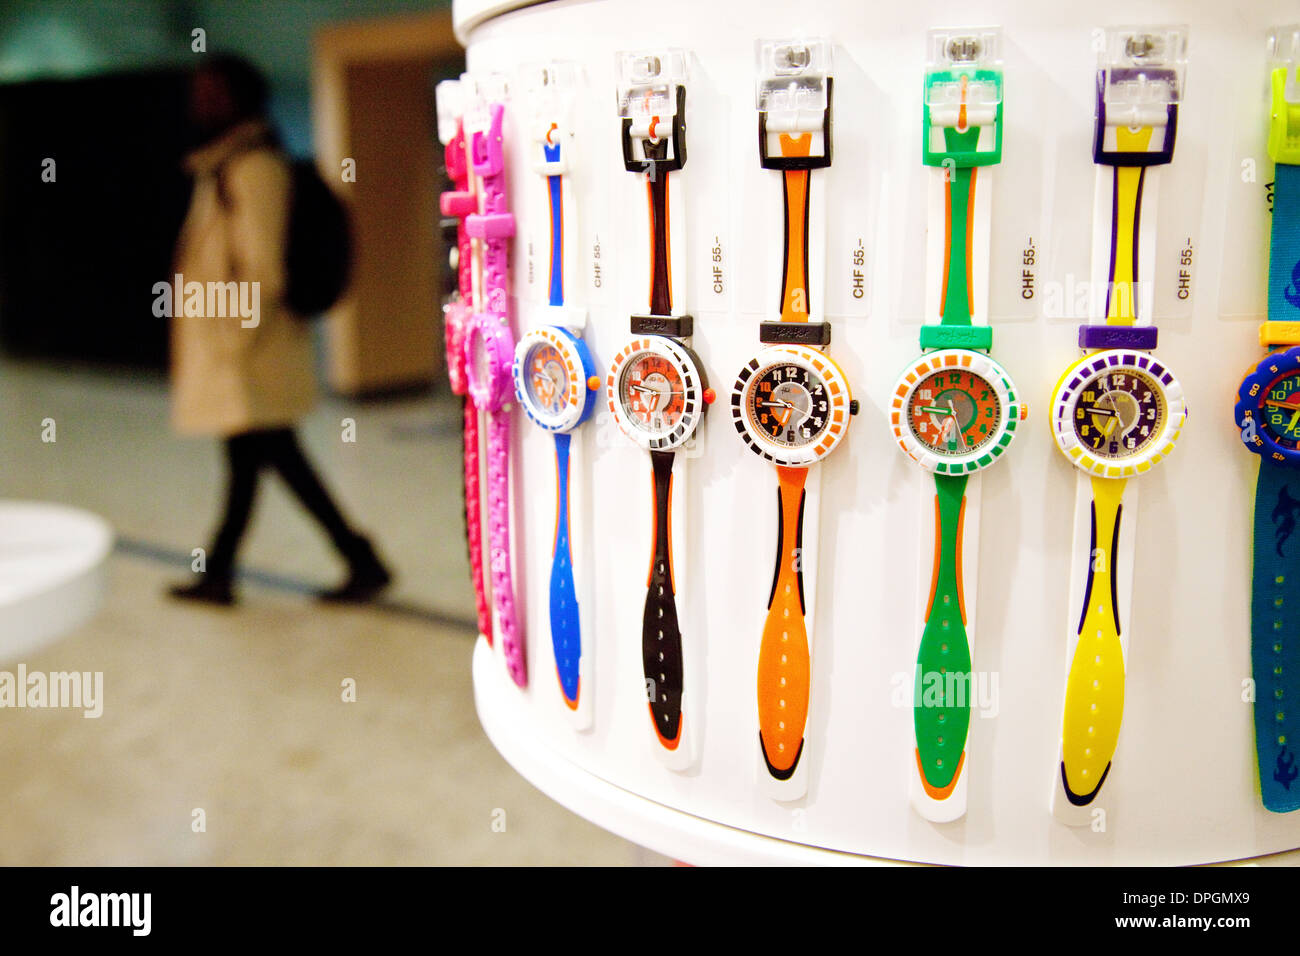 Montres Swatch Swatch dans une boutique, magasin de montres suisses, Genève,  Suisse l'aérogare Photo Stock - Alamy